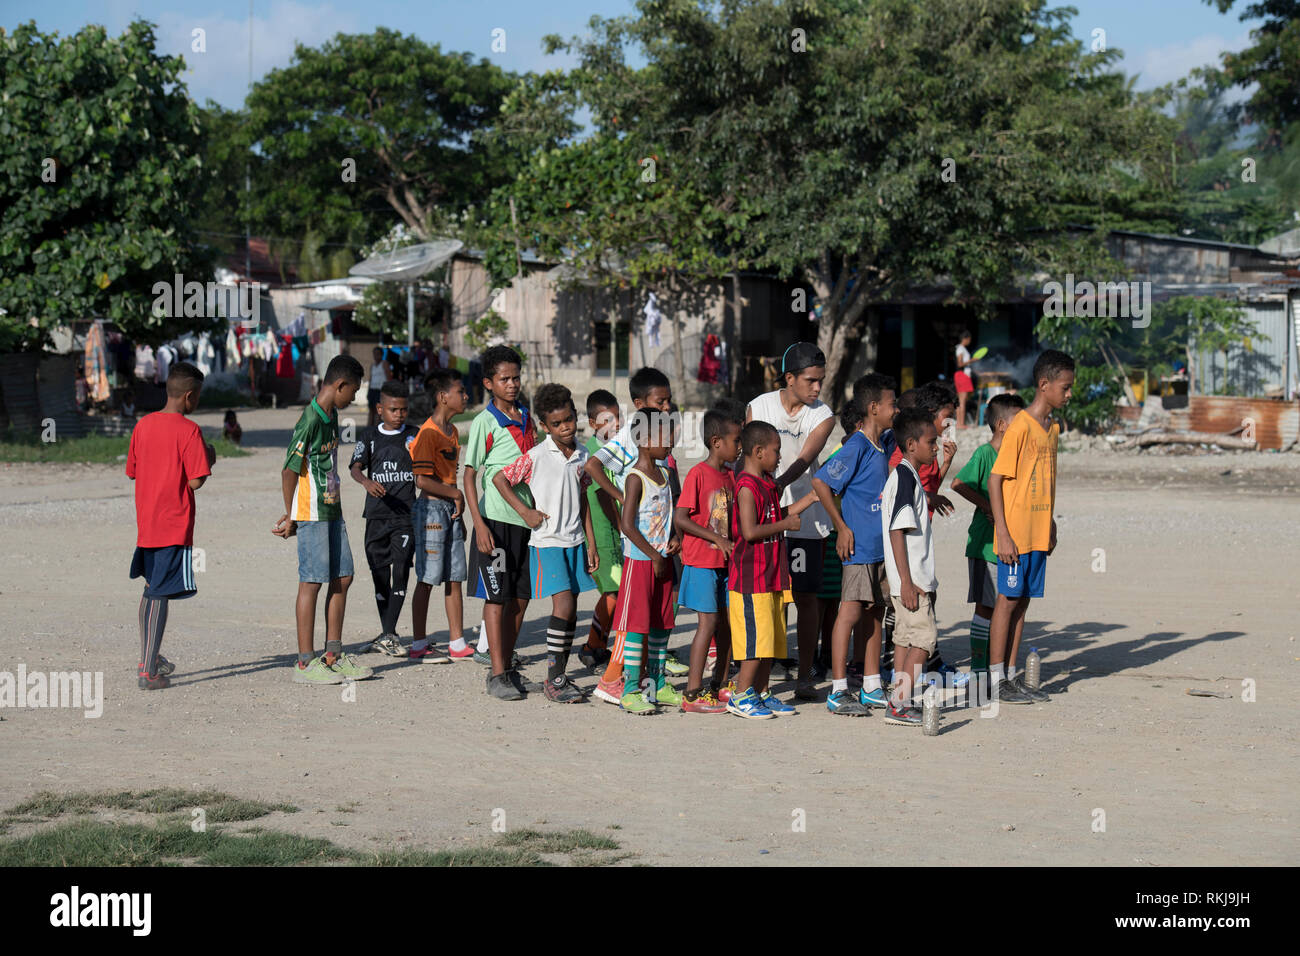 Pratique de football, enfants pratiquant des compétences de football, Dili, Timor oriental Banque D'Images